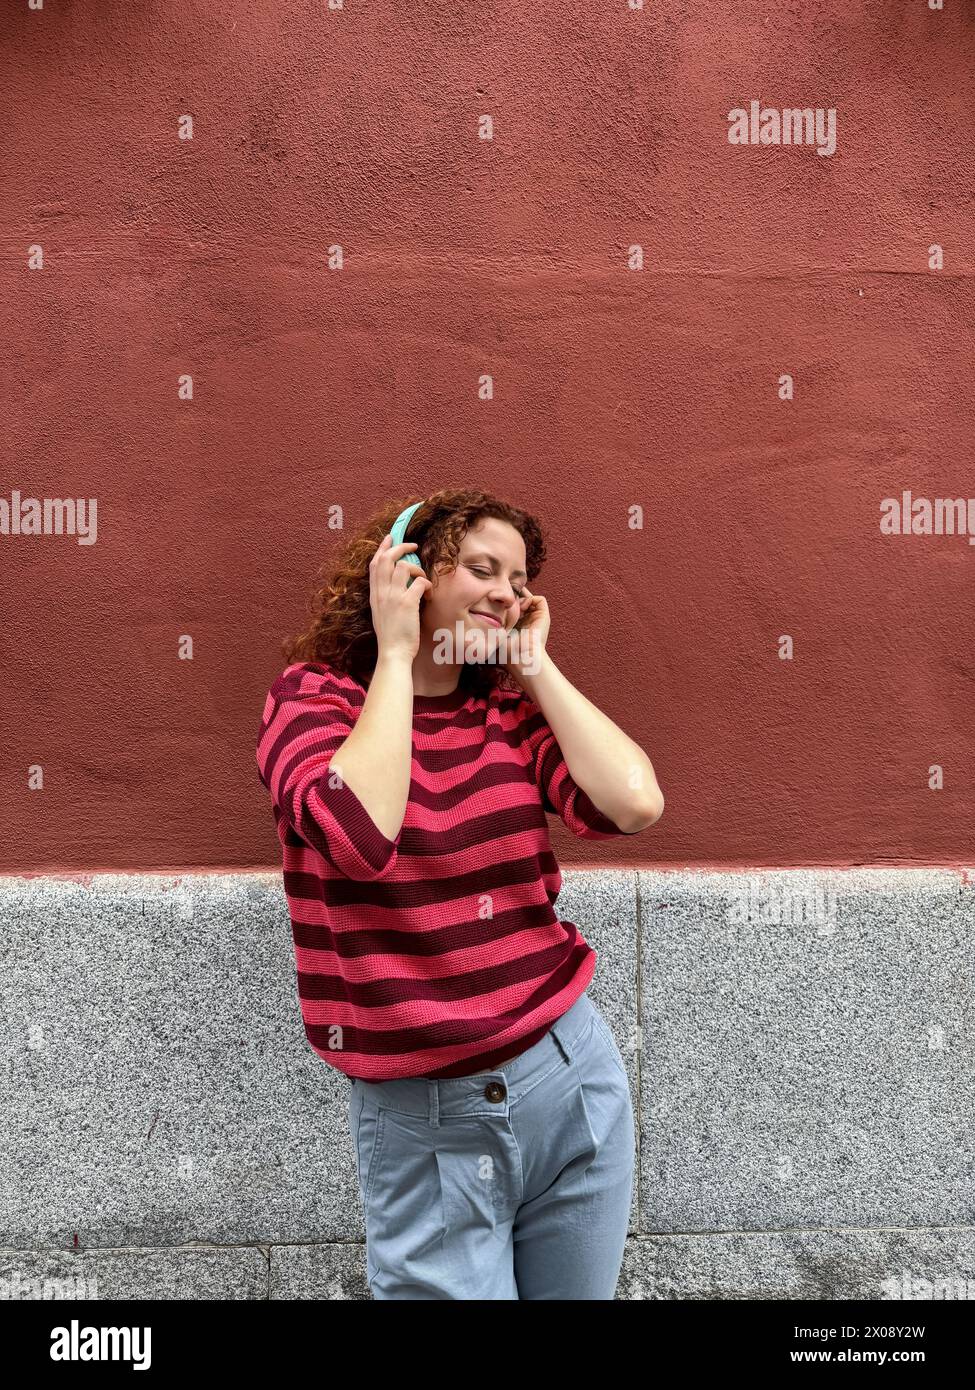 Una giovane donna rossa allegra con i capelli ricci sorride mentre ascolta la musica con le sue cuffie color acqua contro un muro rosso Foto Stock